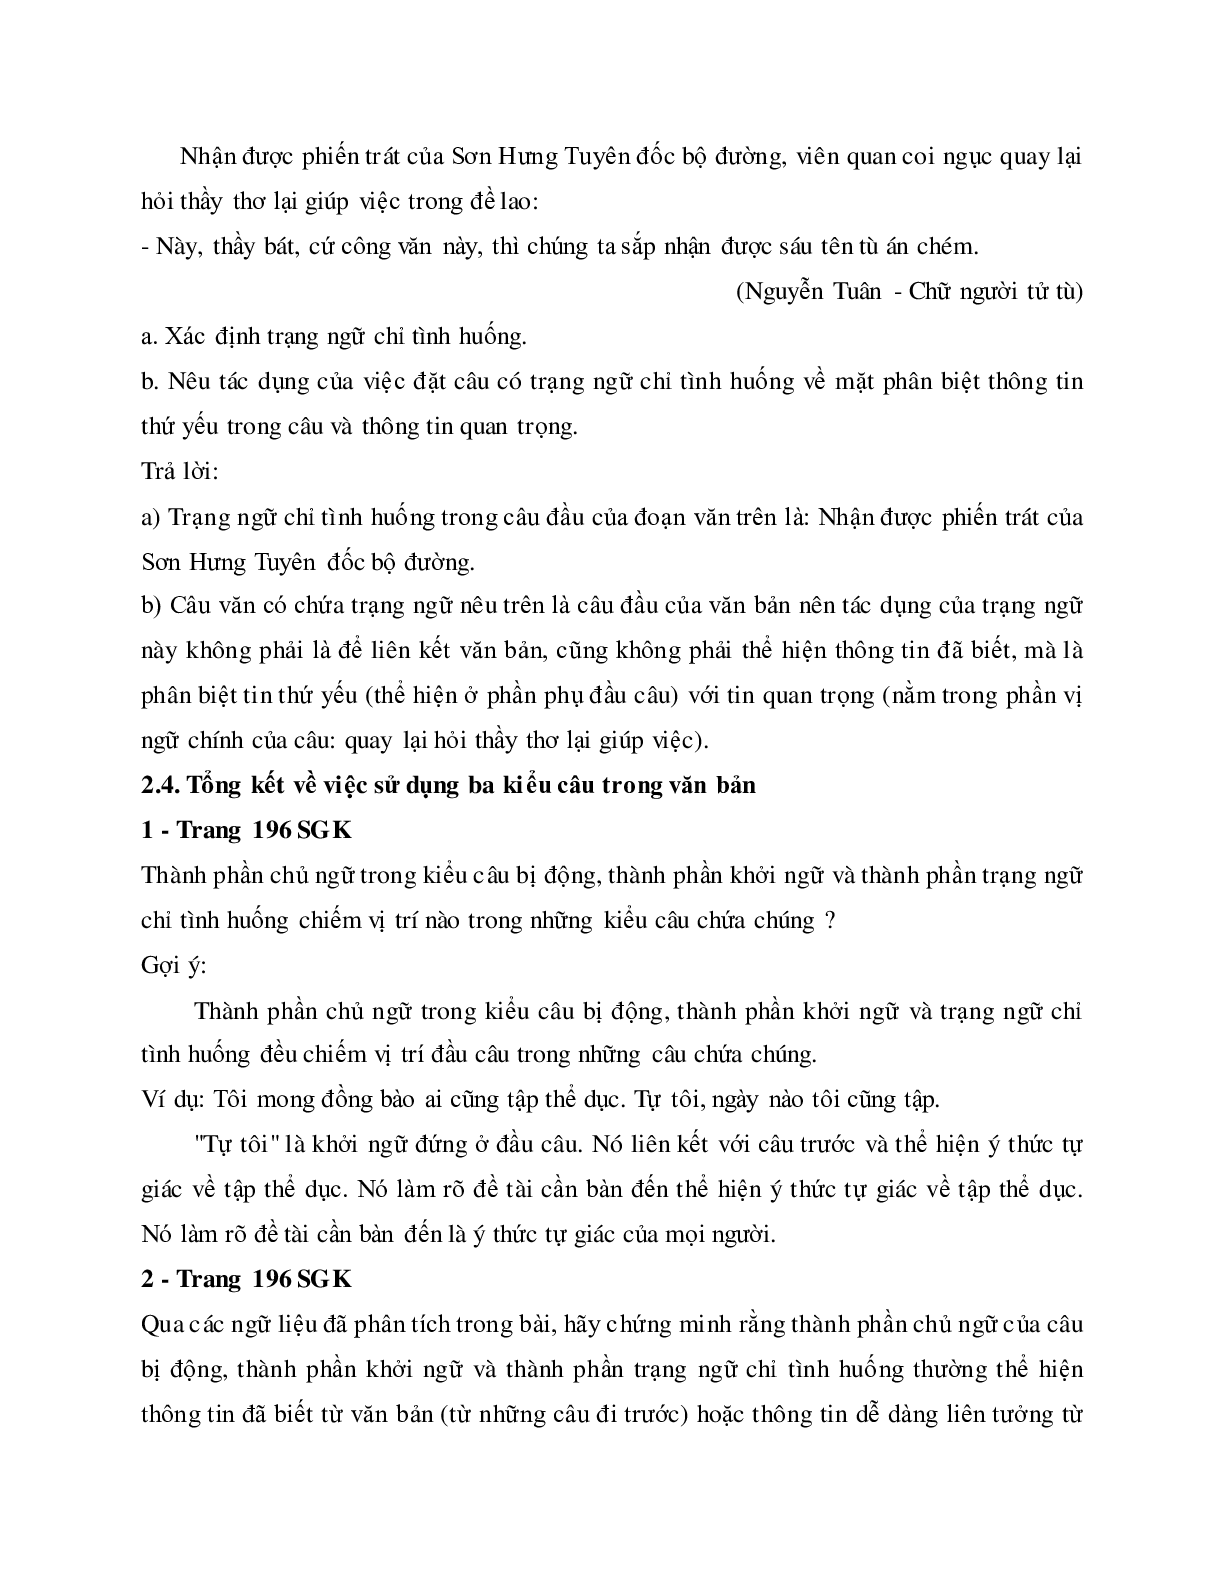 Soạn bài Thực hành về sử dụng một số kiểu câu trong văn bản - ngắn nhất Soạn văn 11 (trang 9)